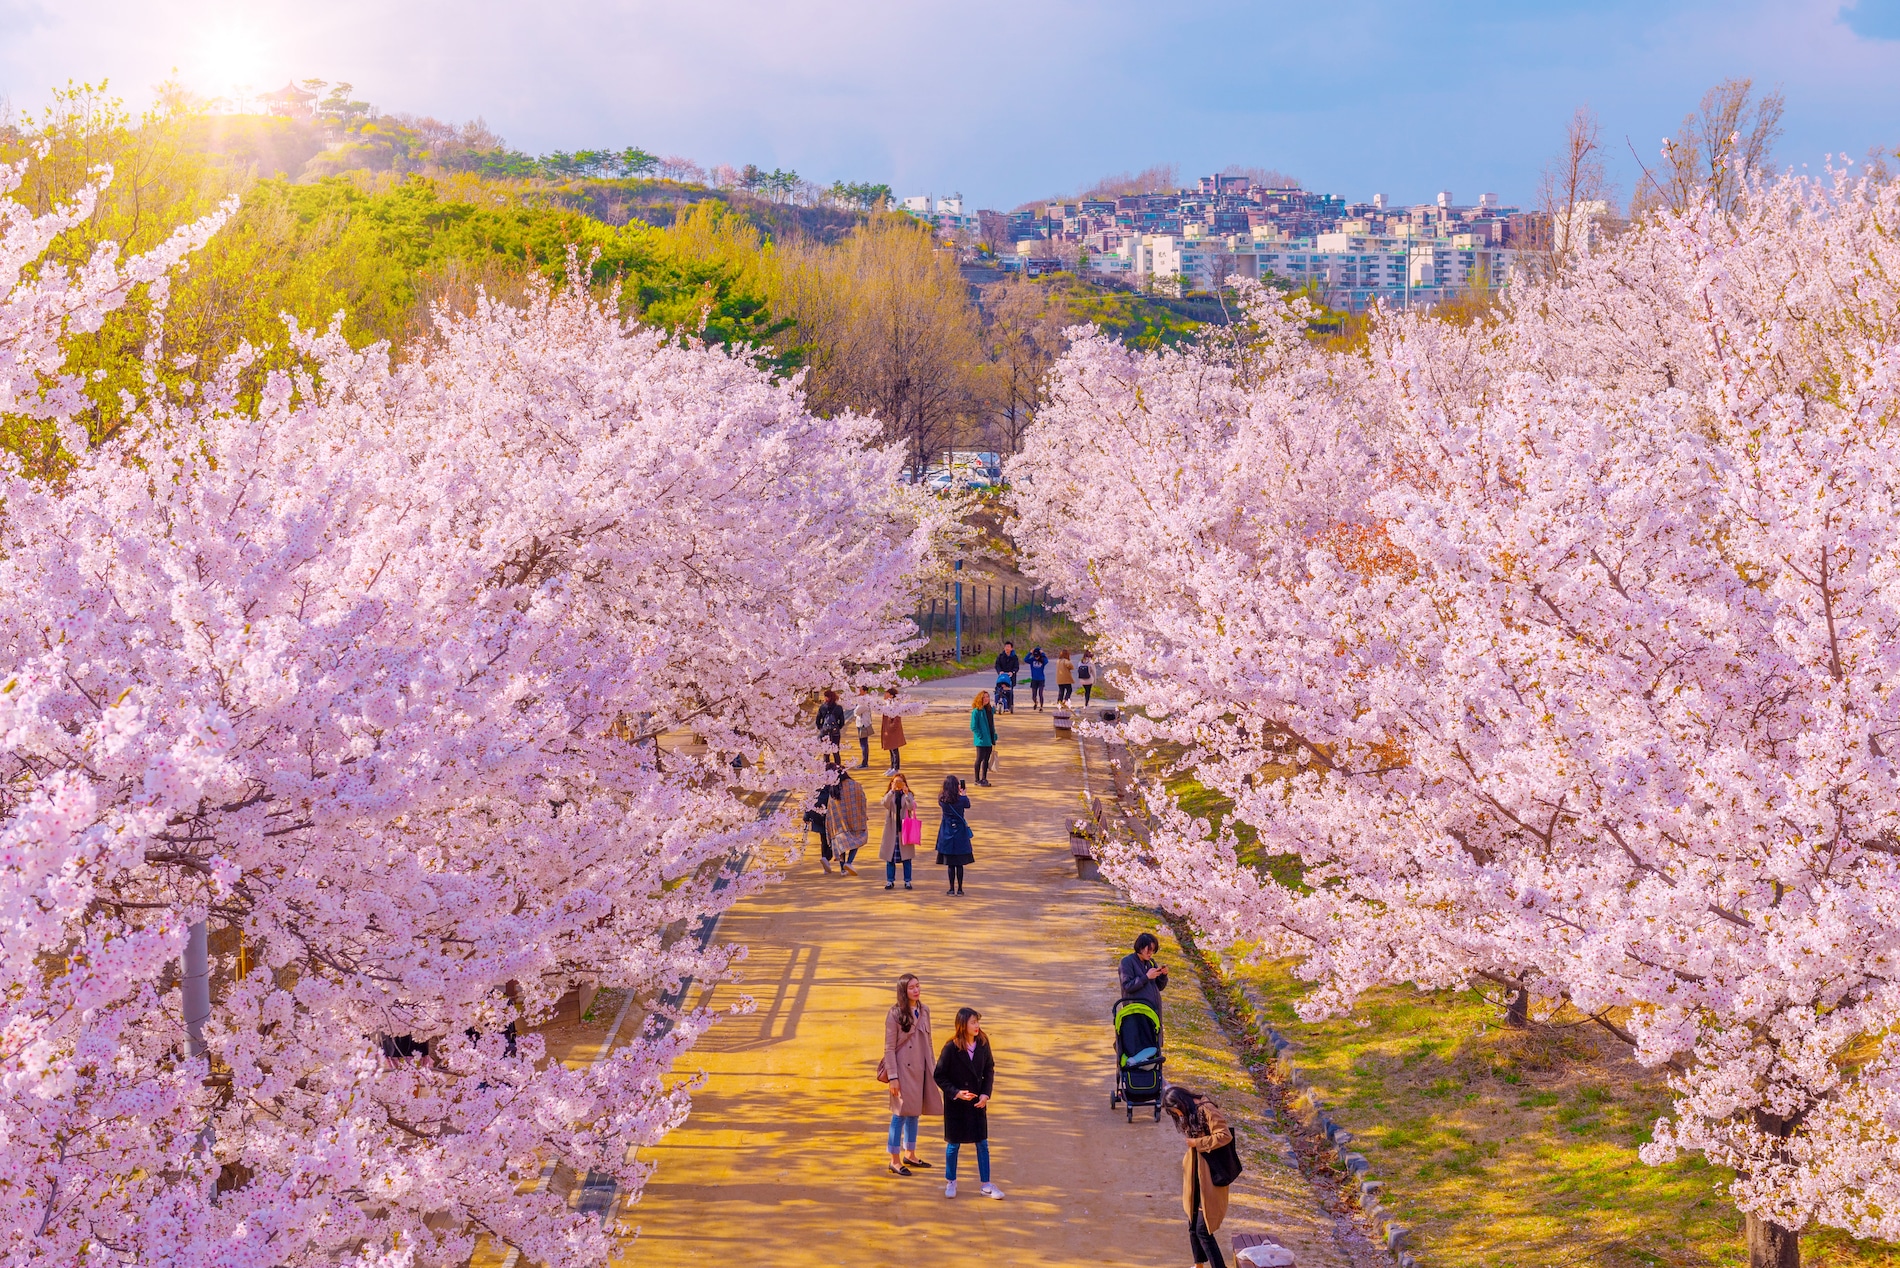 Korea in spring